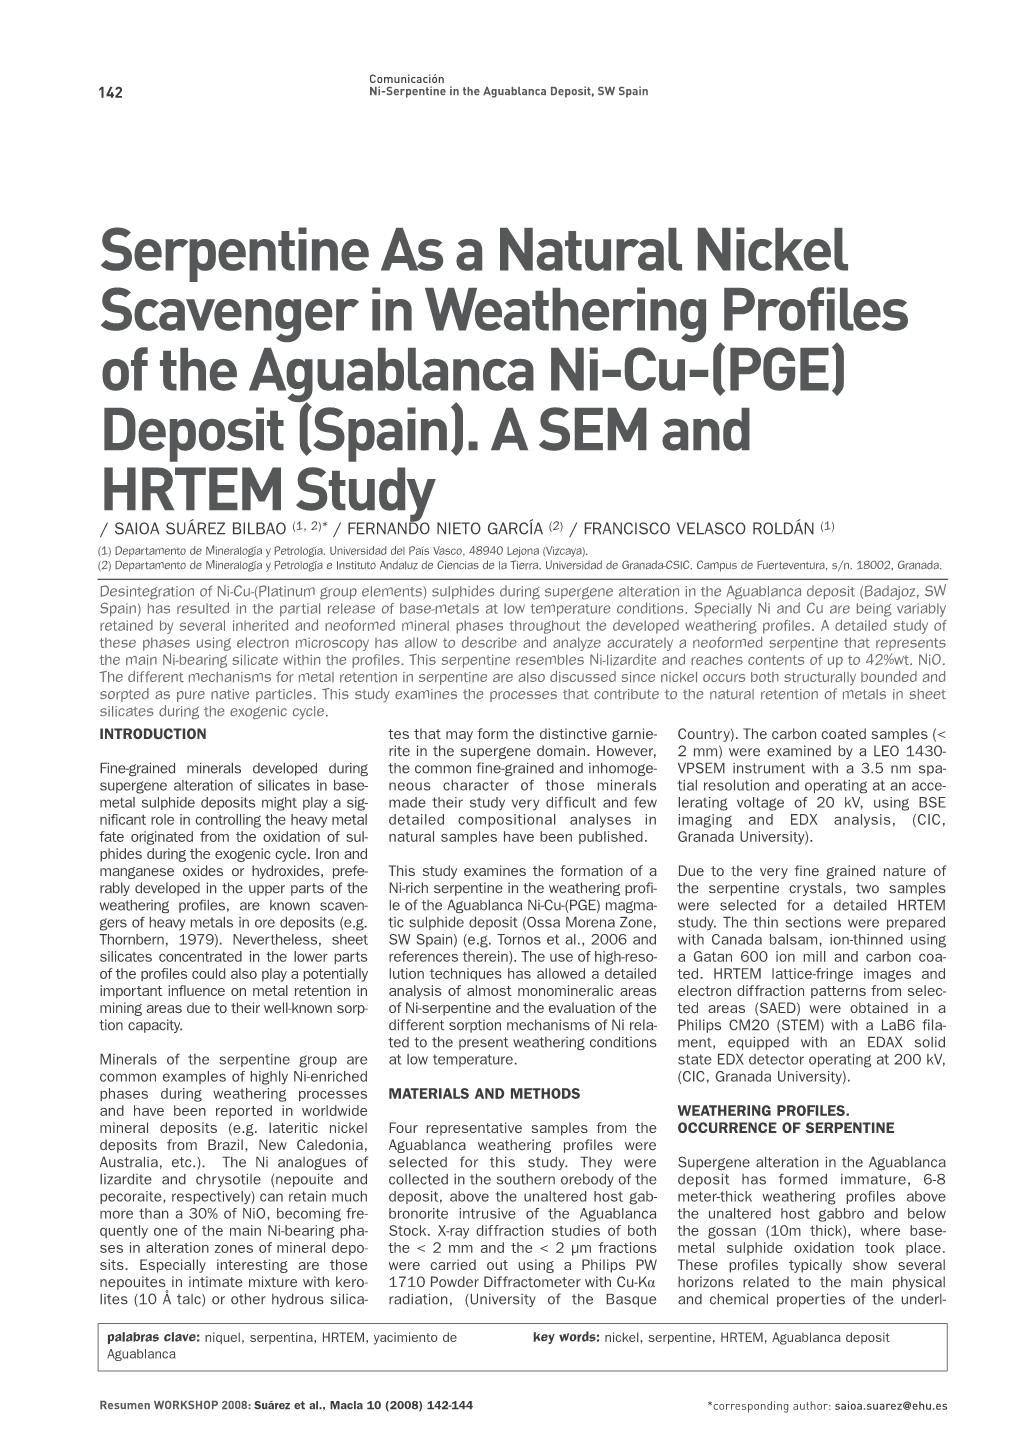 Serpentine As a Natural Nickel Scavenger in Weathering Profiles of the Aguablanca Ni-Cu-(PGE) Deposit (Spain)